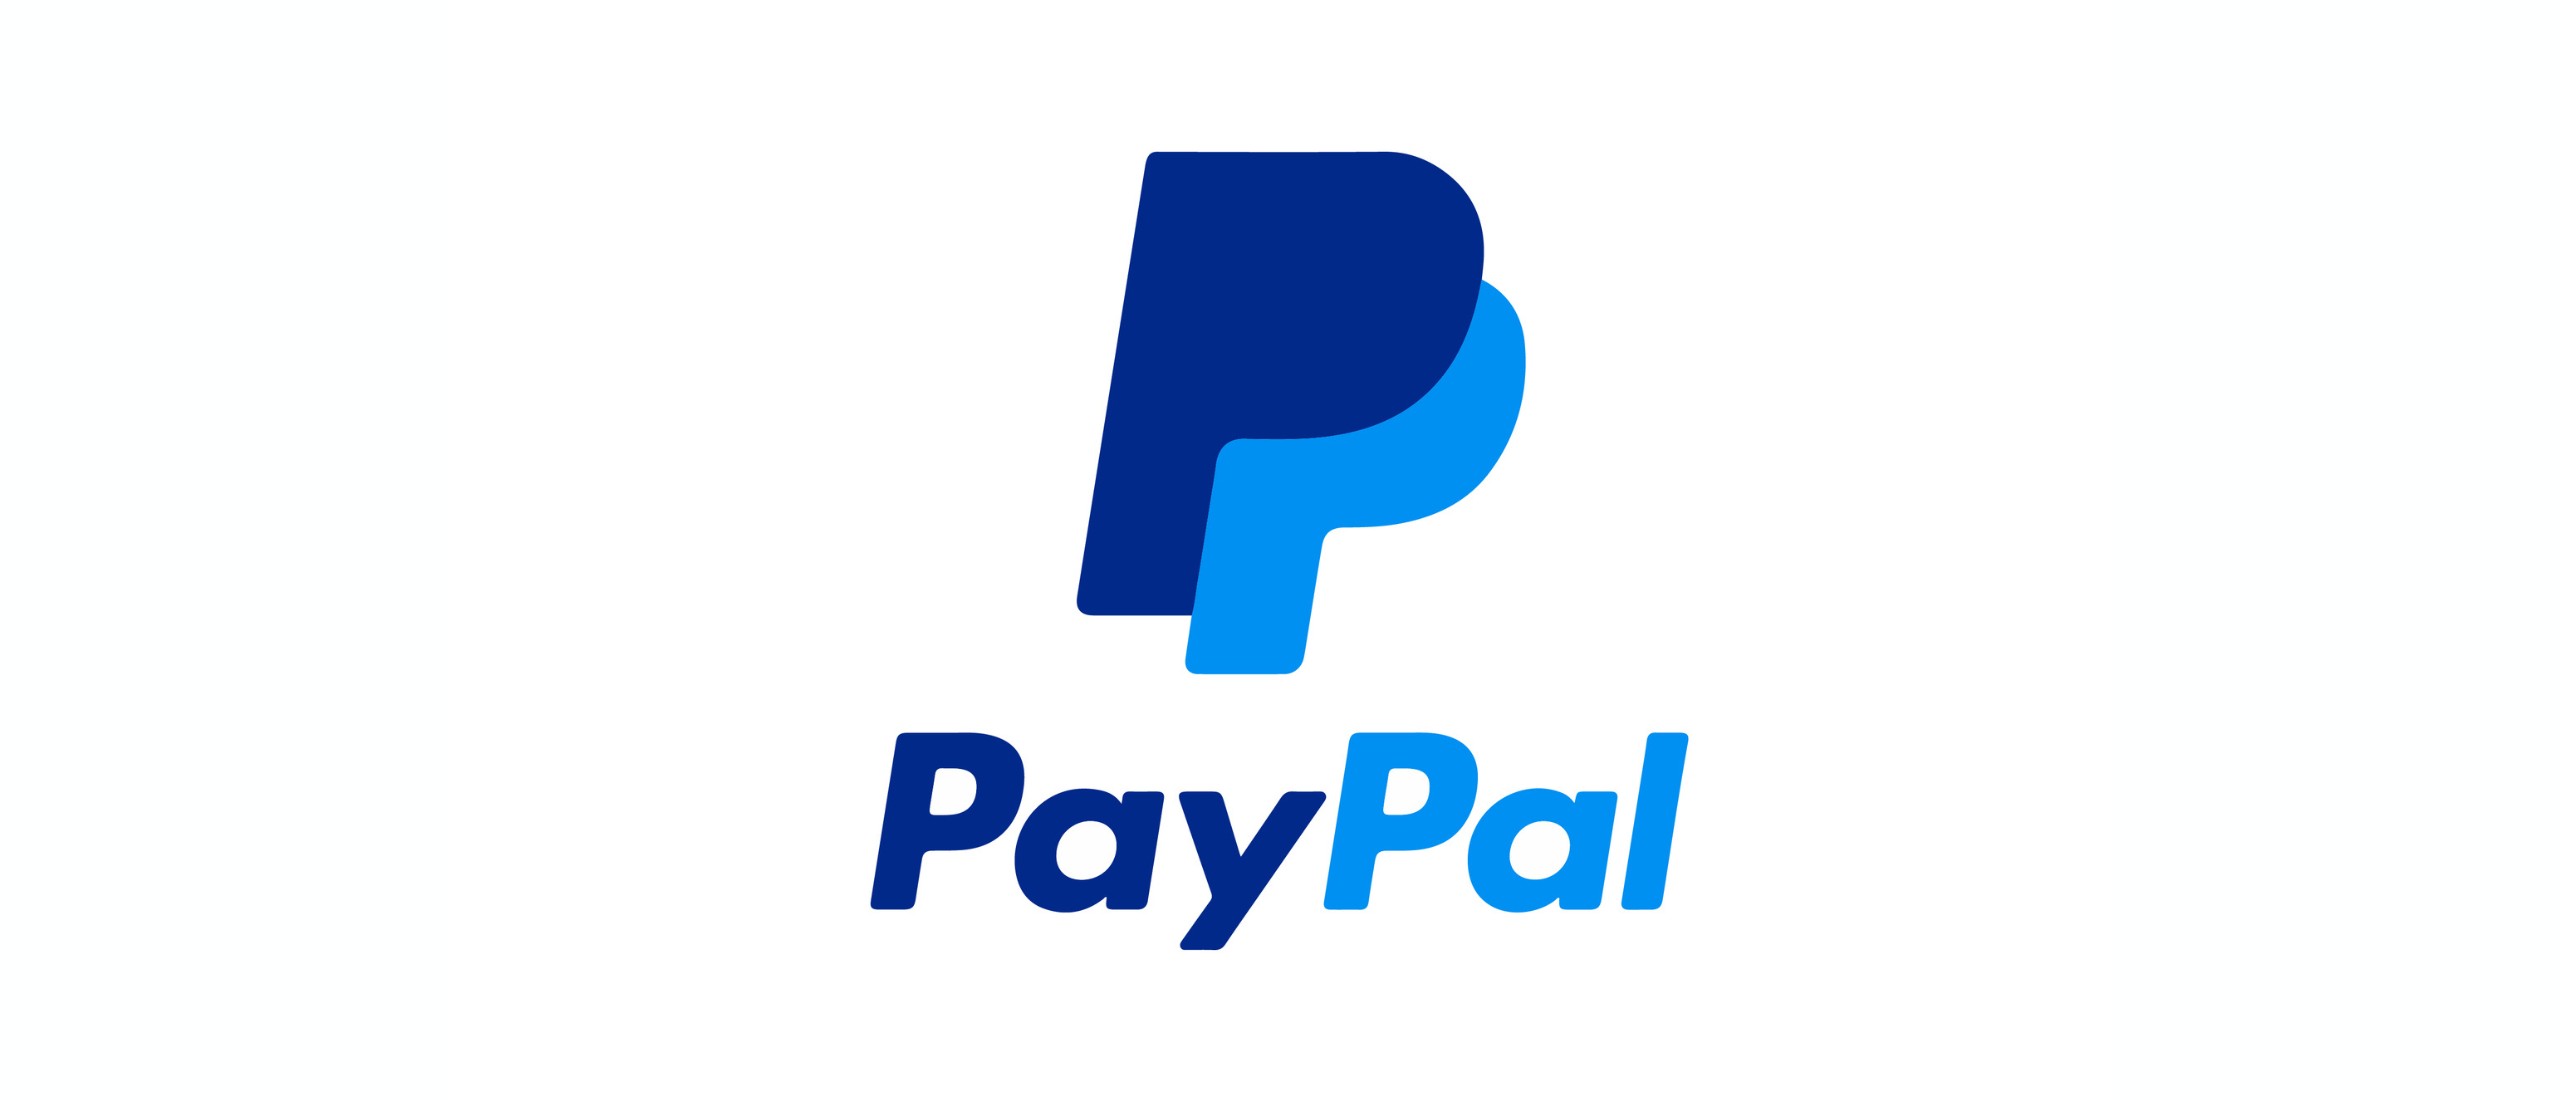 Voor- en nadelen van PayPal als betaalmethode